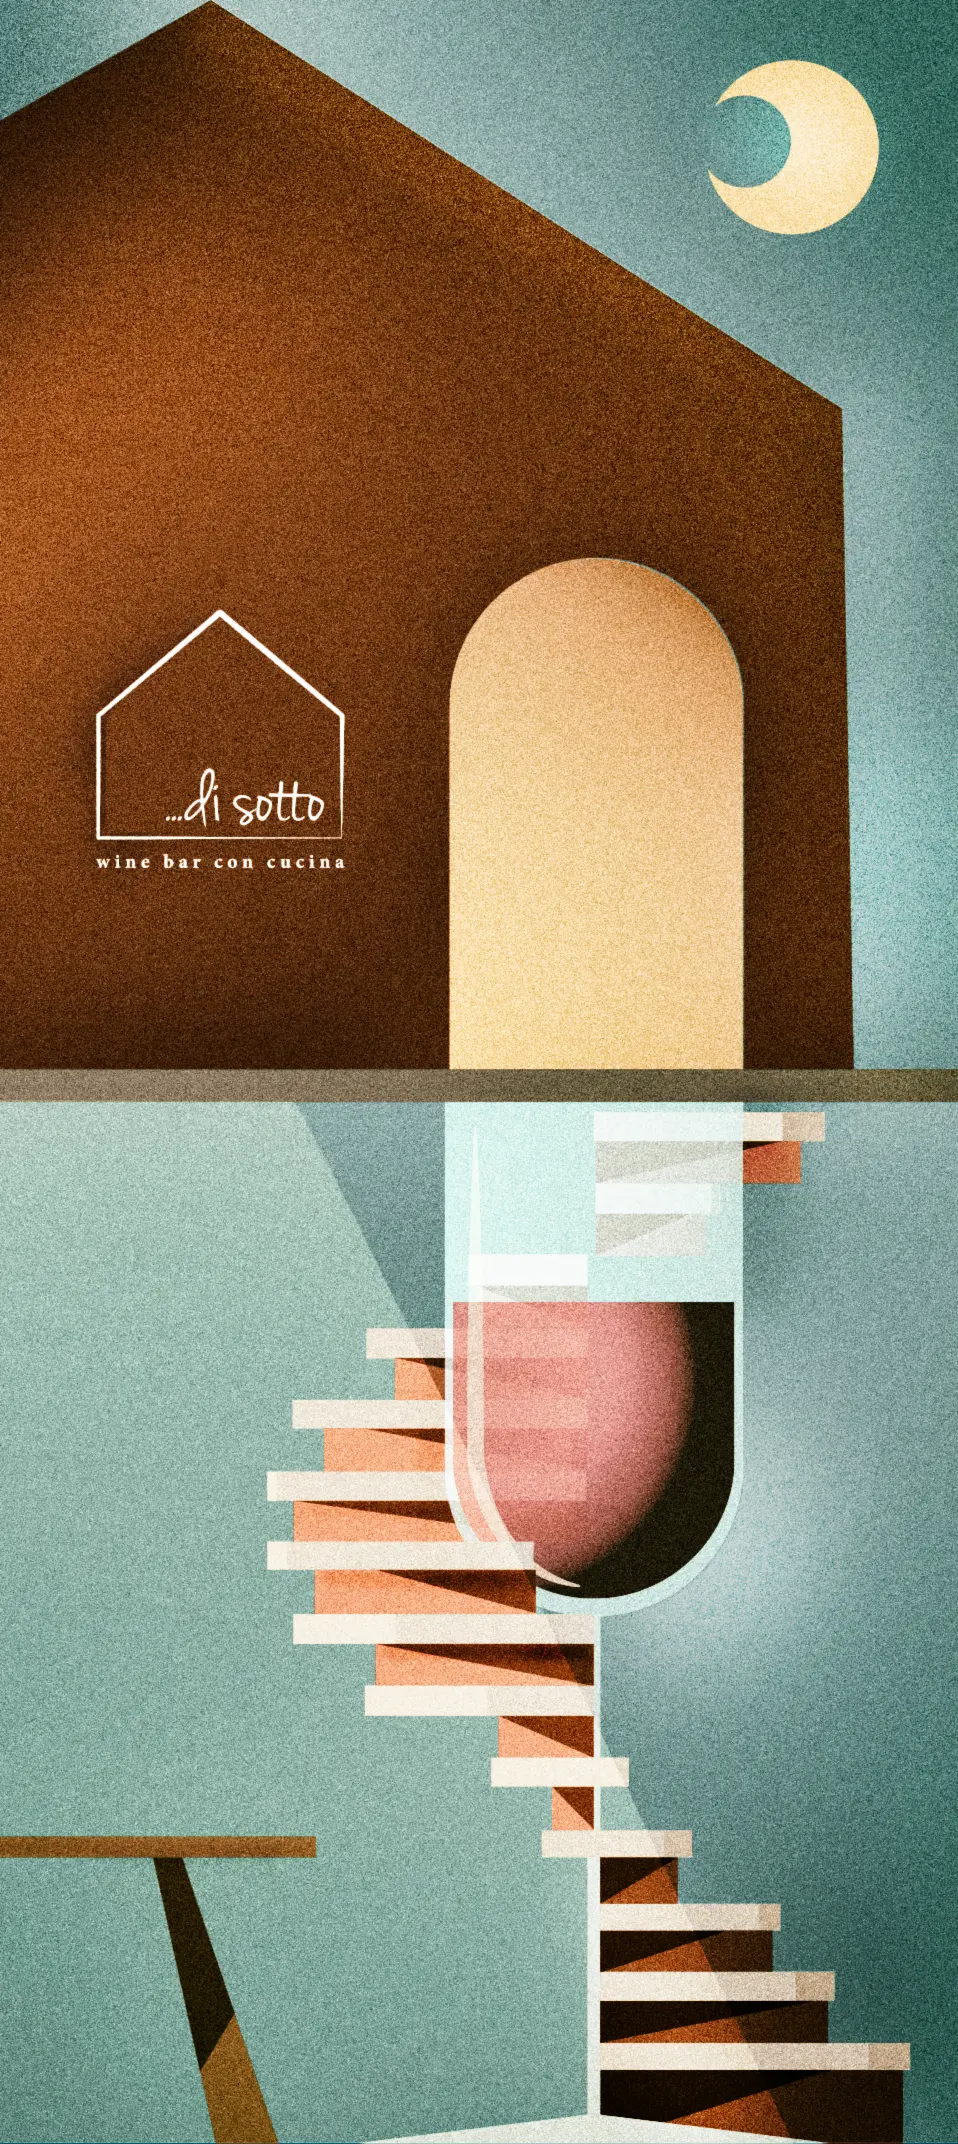 Immagine artistica di una casa dal cui ingresso parte una scala a chiocciola che scende di sotto, la scala a chiocciola si svolge attorno ad un calice